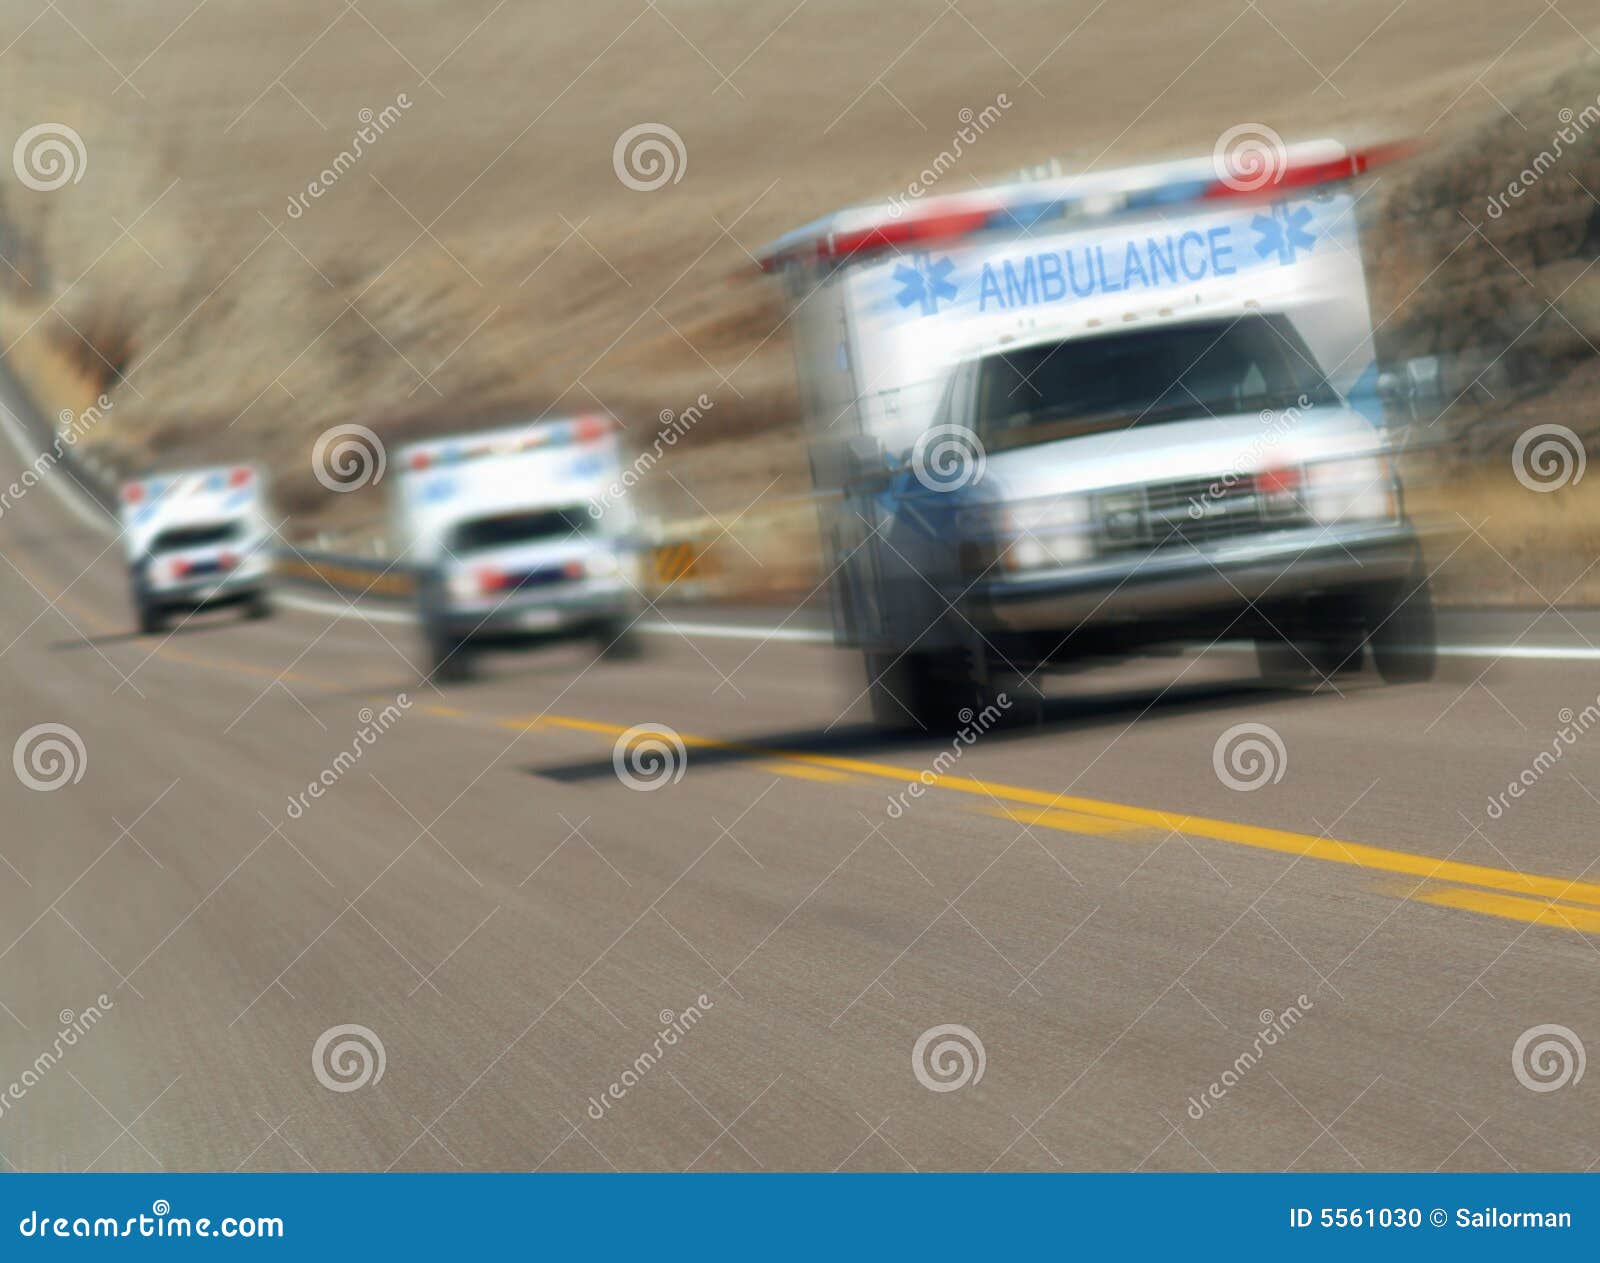 ambulances rushing